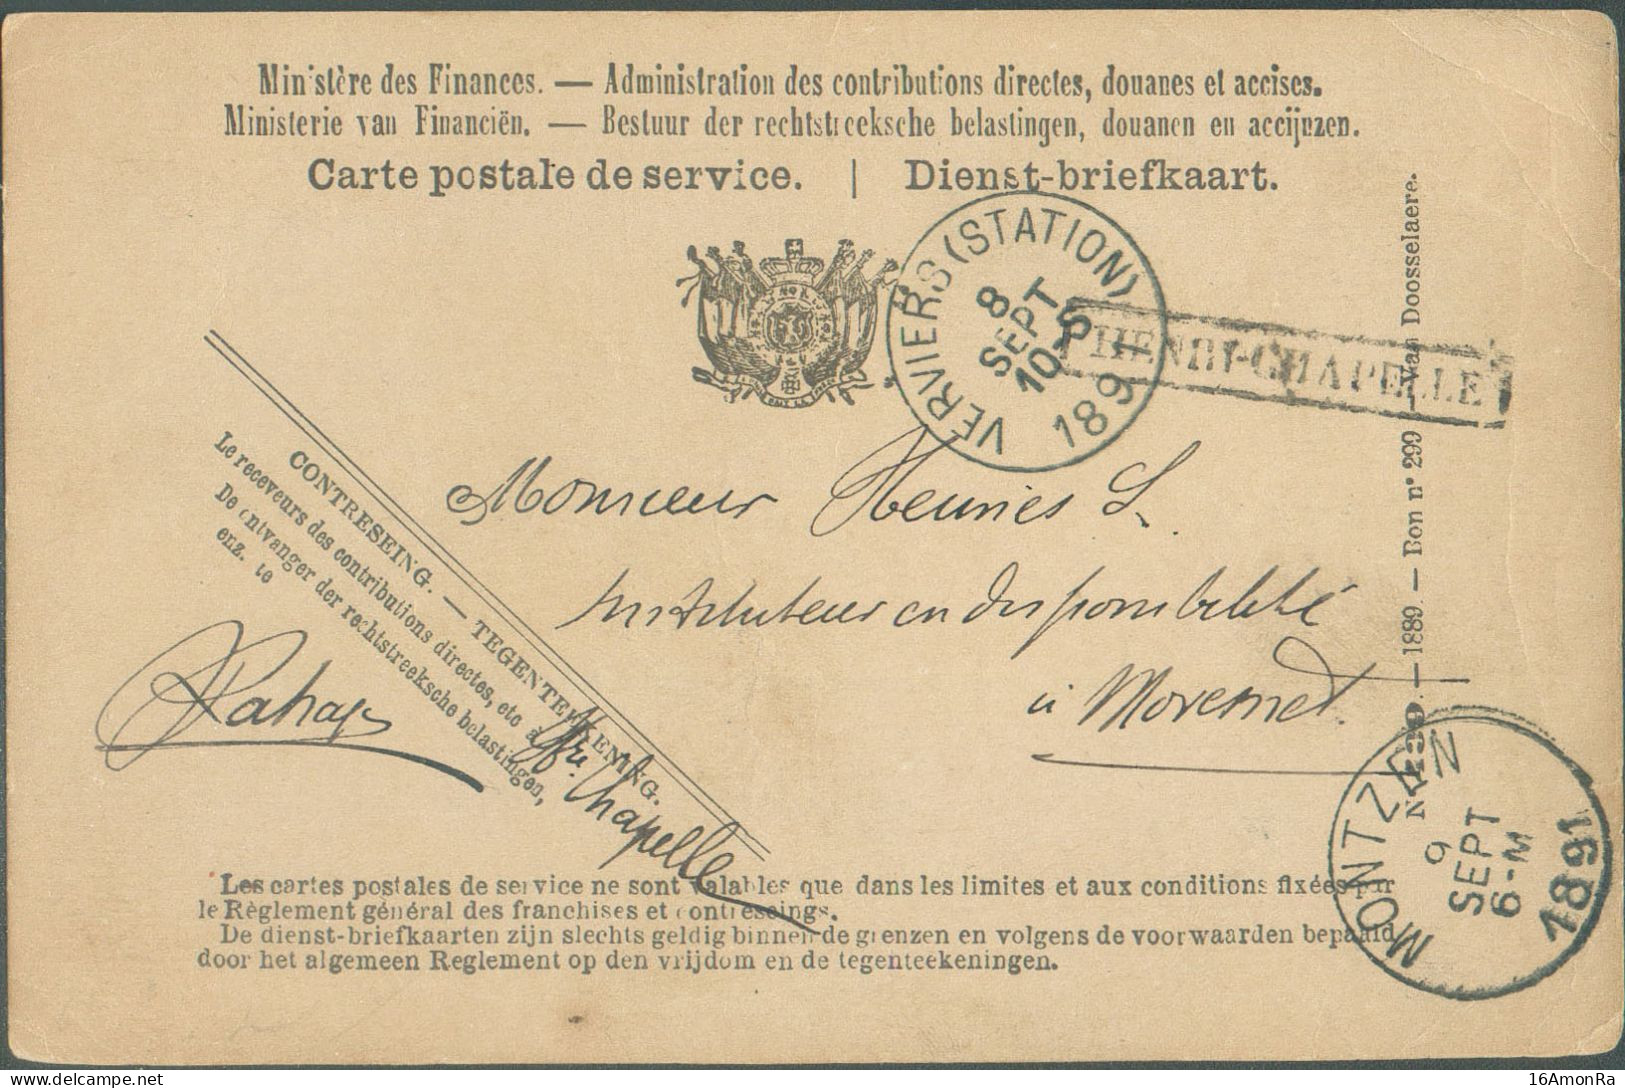 C.P. De Service Obl. Sc VERVIERS (STATION) 8 Sept. 1891 + Griffe HENRI-CHAPELLE Vers MONTZEN (9/9)   22185bis  Cantons D - Lineari